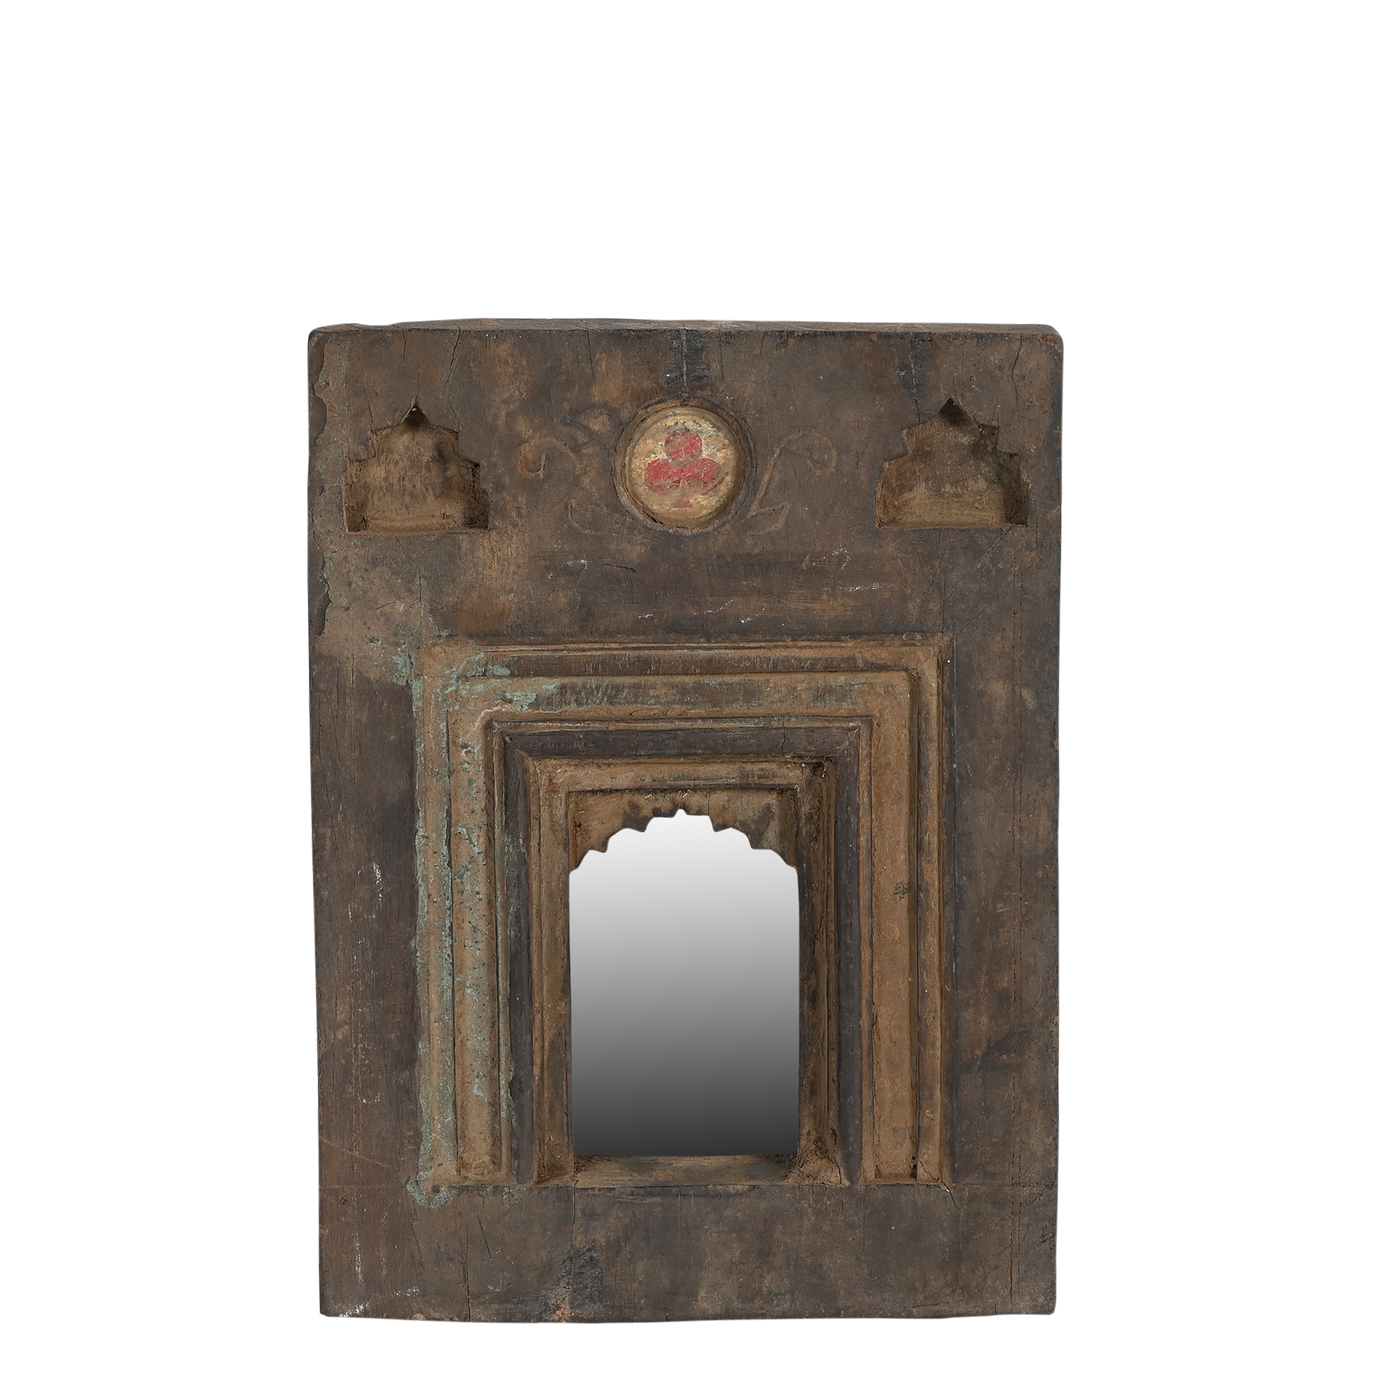 Mandir - Temple mirror n°52